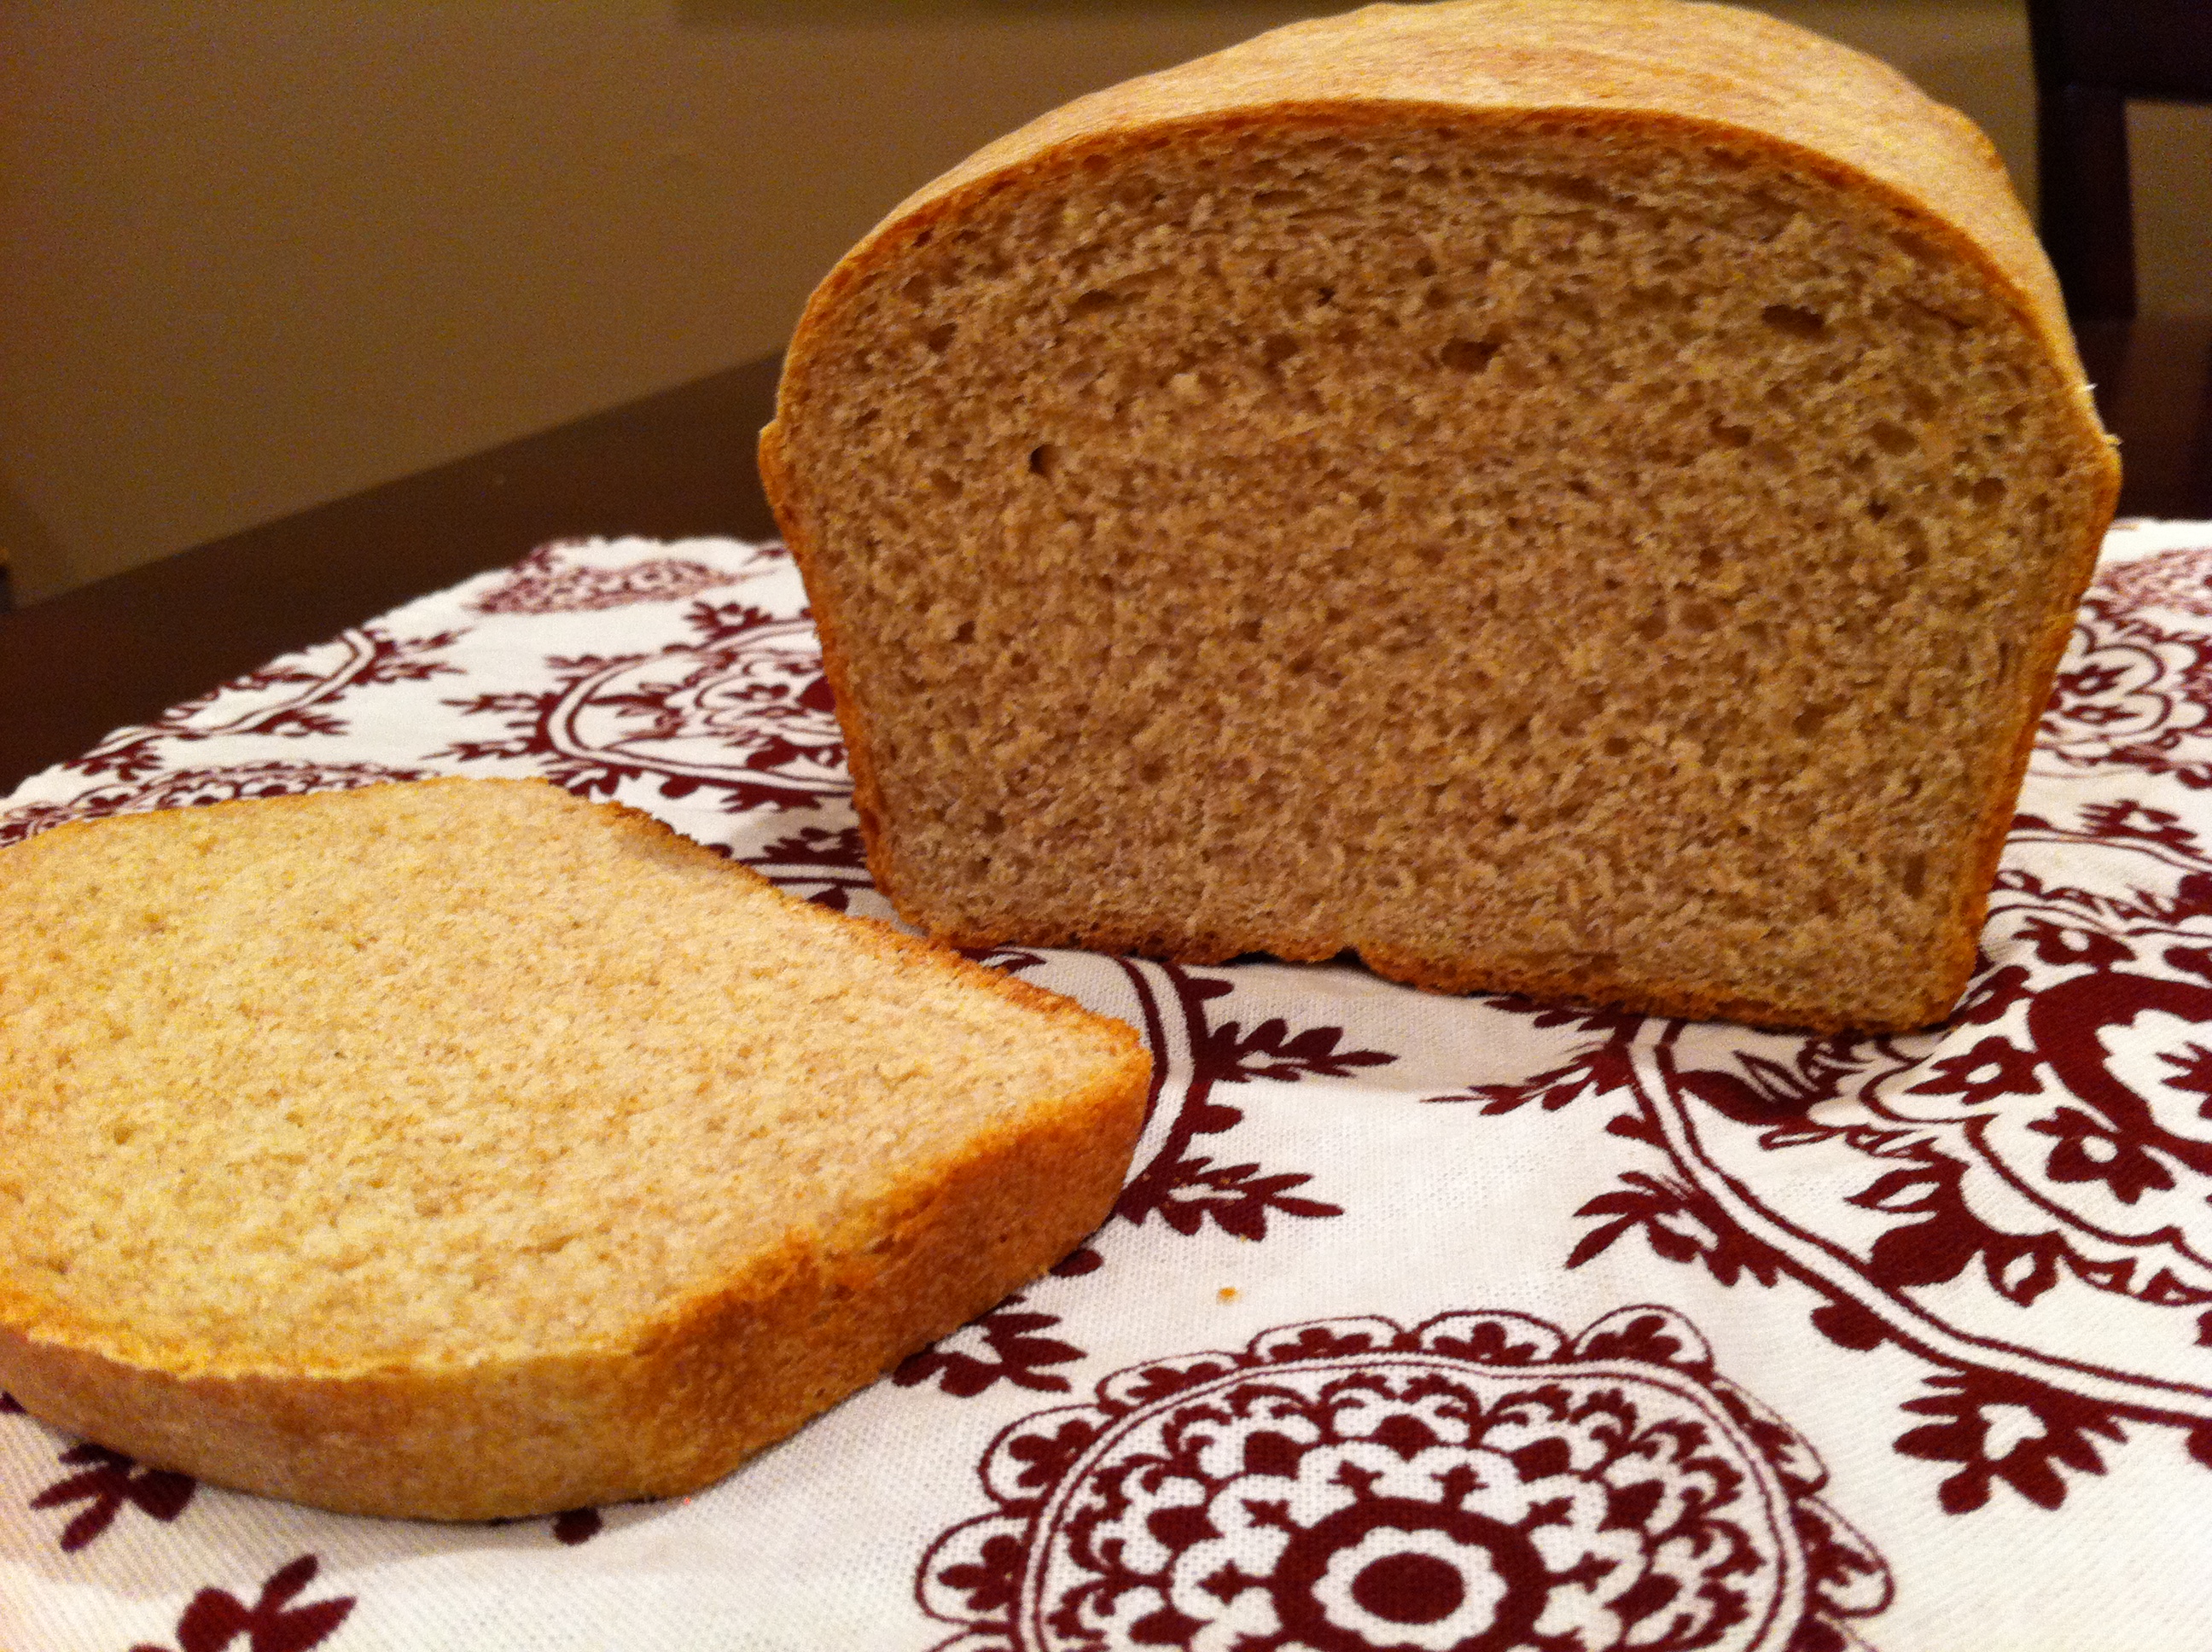 Хлеб растительного происхождения. Черный хлеб с отрубями. Второй хлеб. Батон черного хлеба. Хлеб подсолнечный.